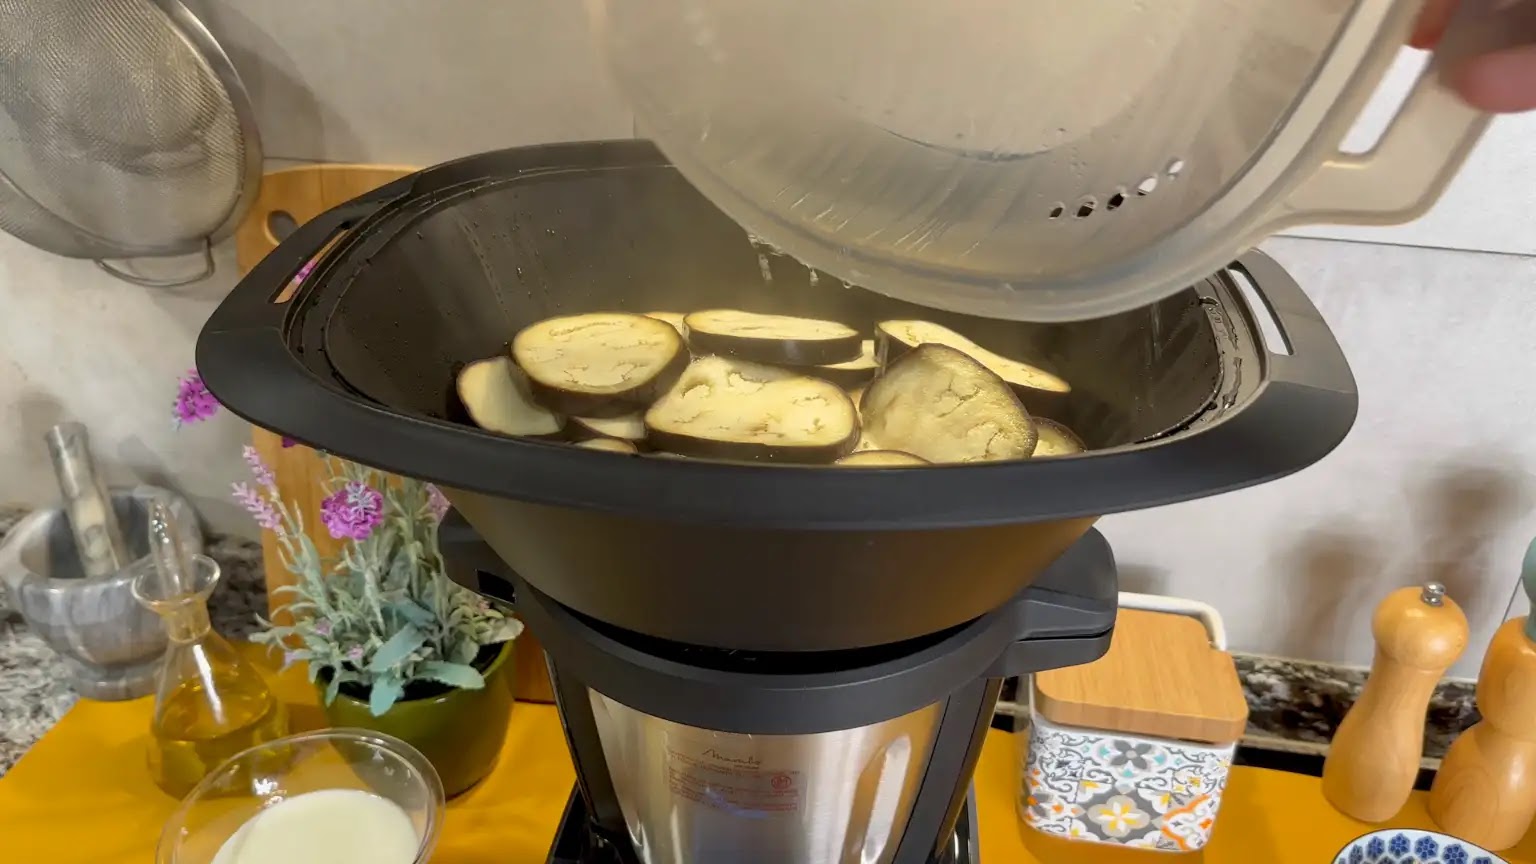 Robot de cocina Mambo Touch Cecotec con jarra de segunda mano por